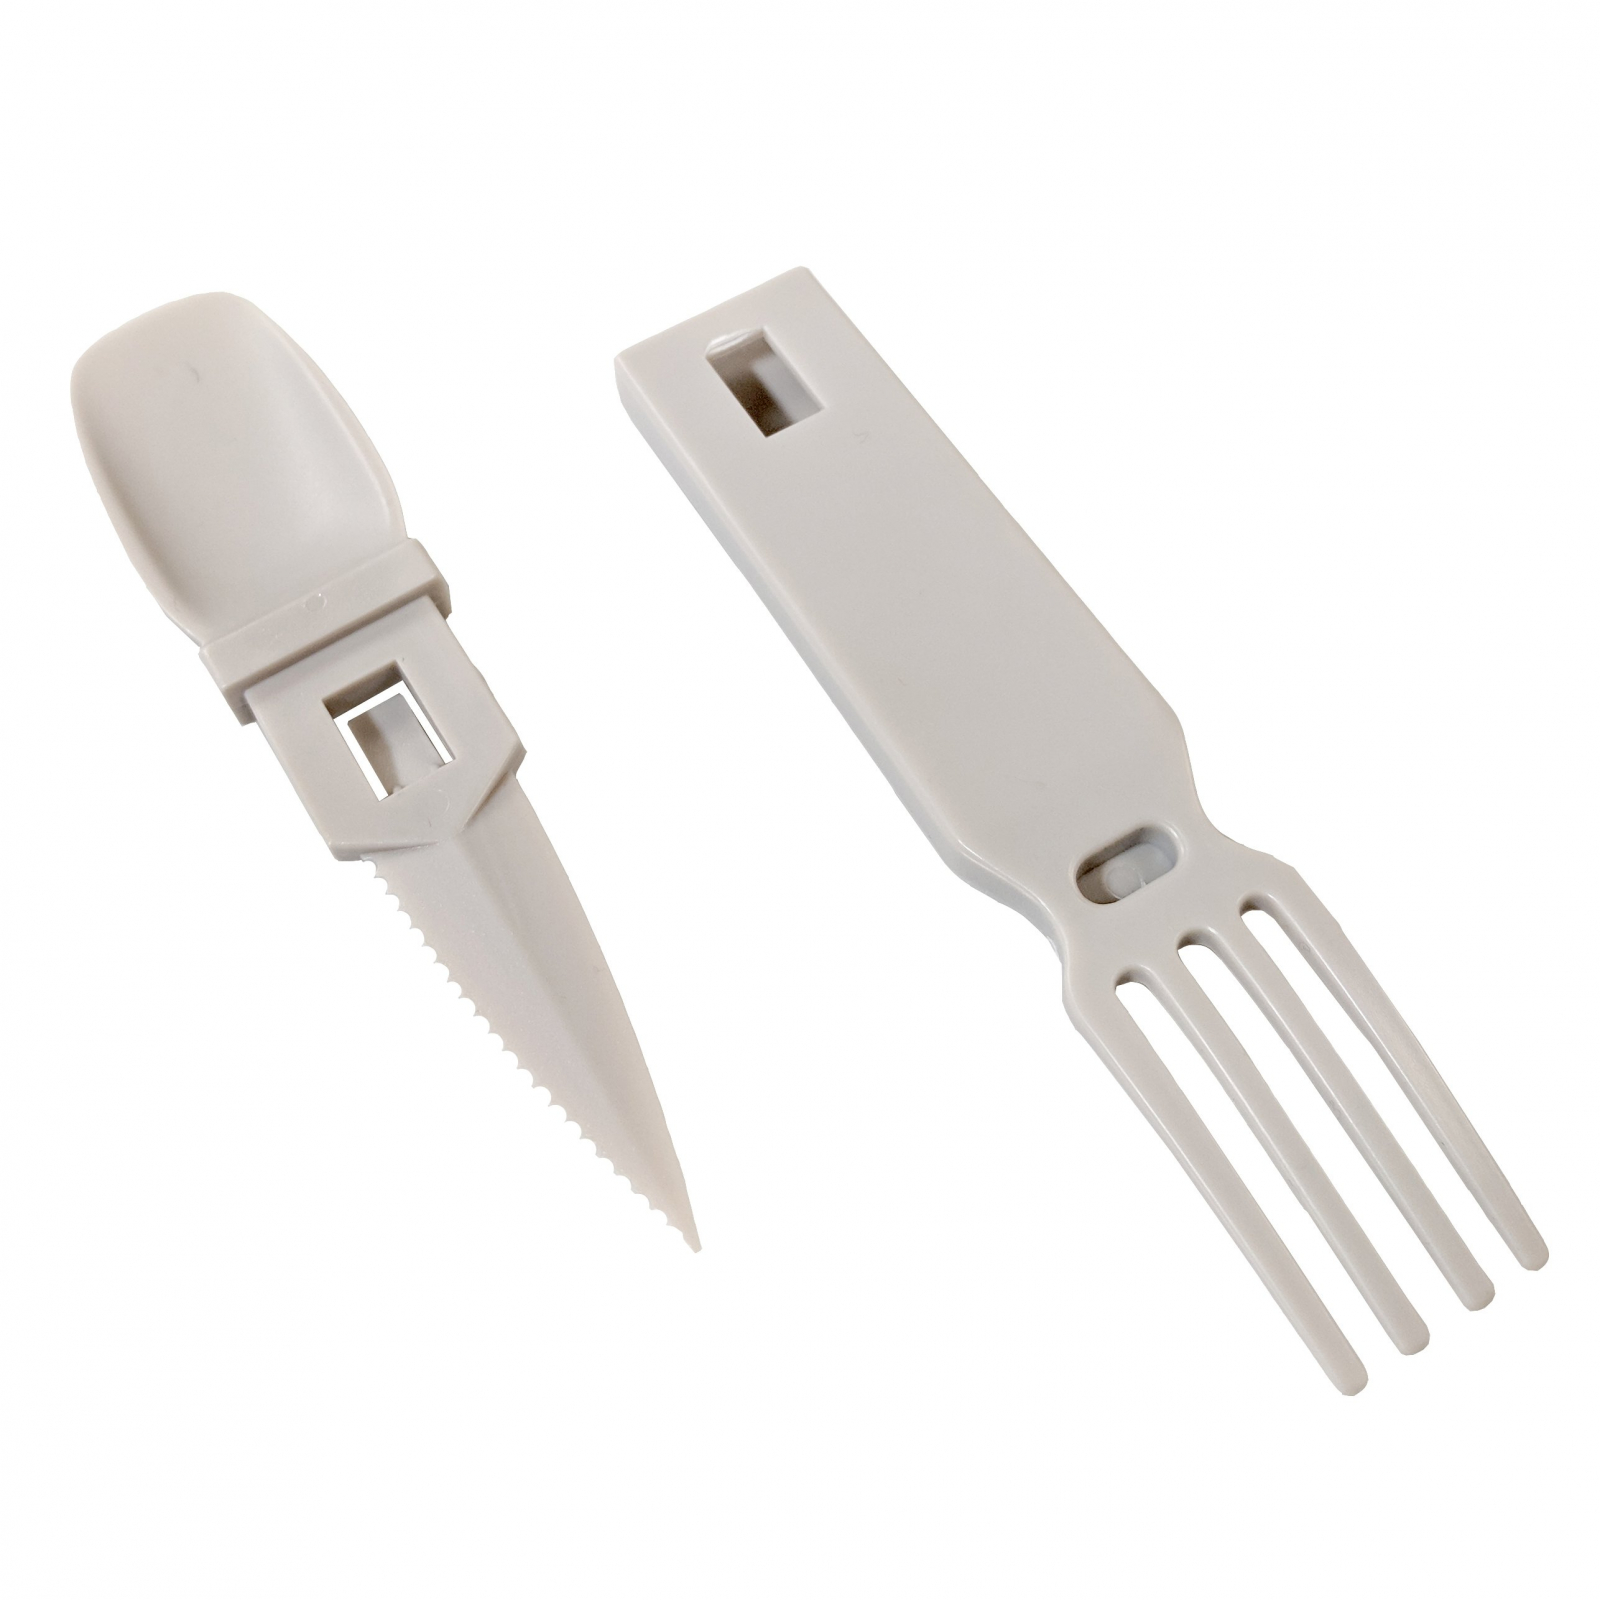 ASR Outdoor Snapatite 3 in 1 Utensil Lightweight Pocket Travel Cutlery Light Grey